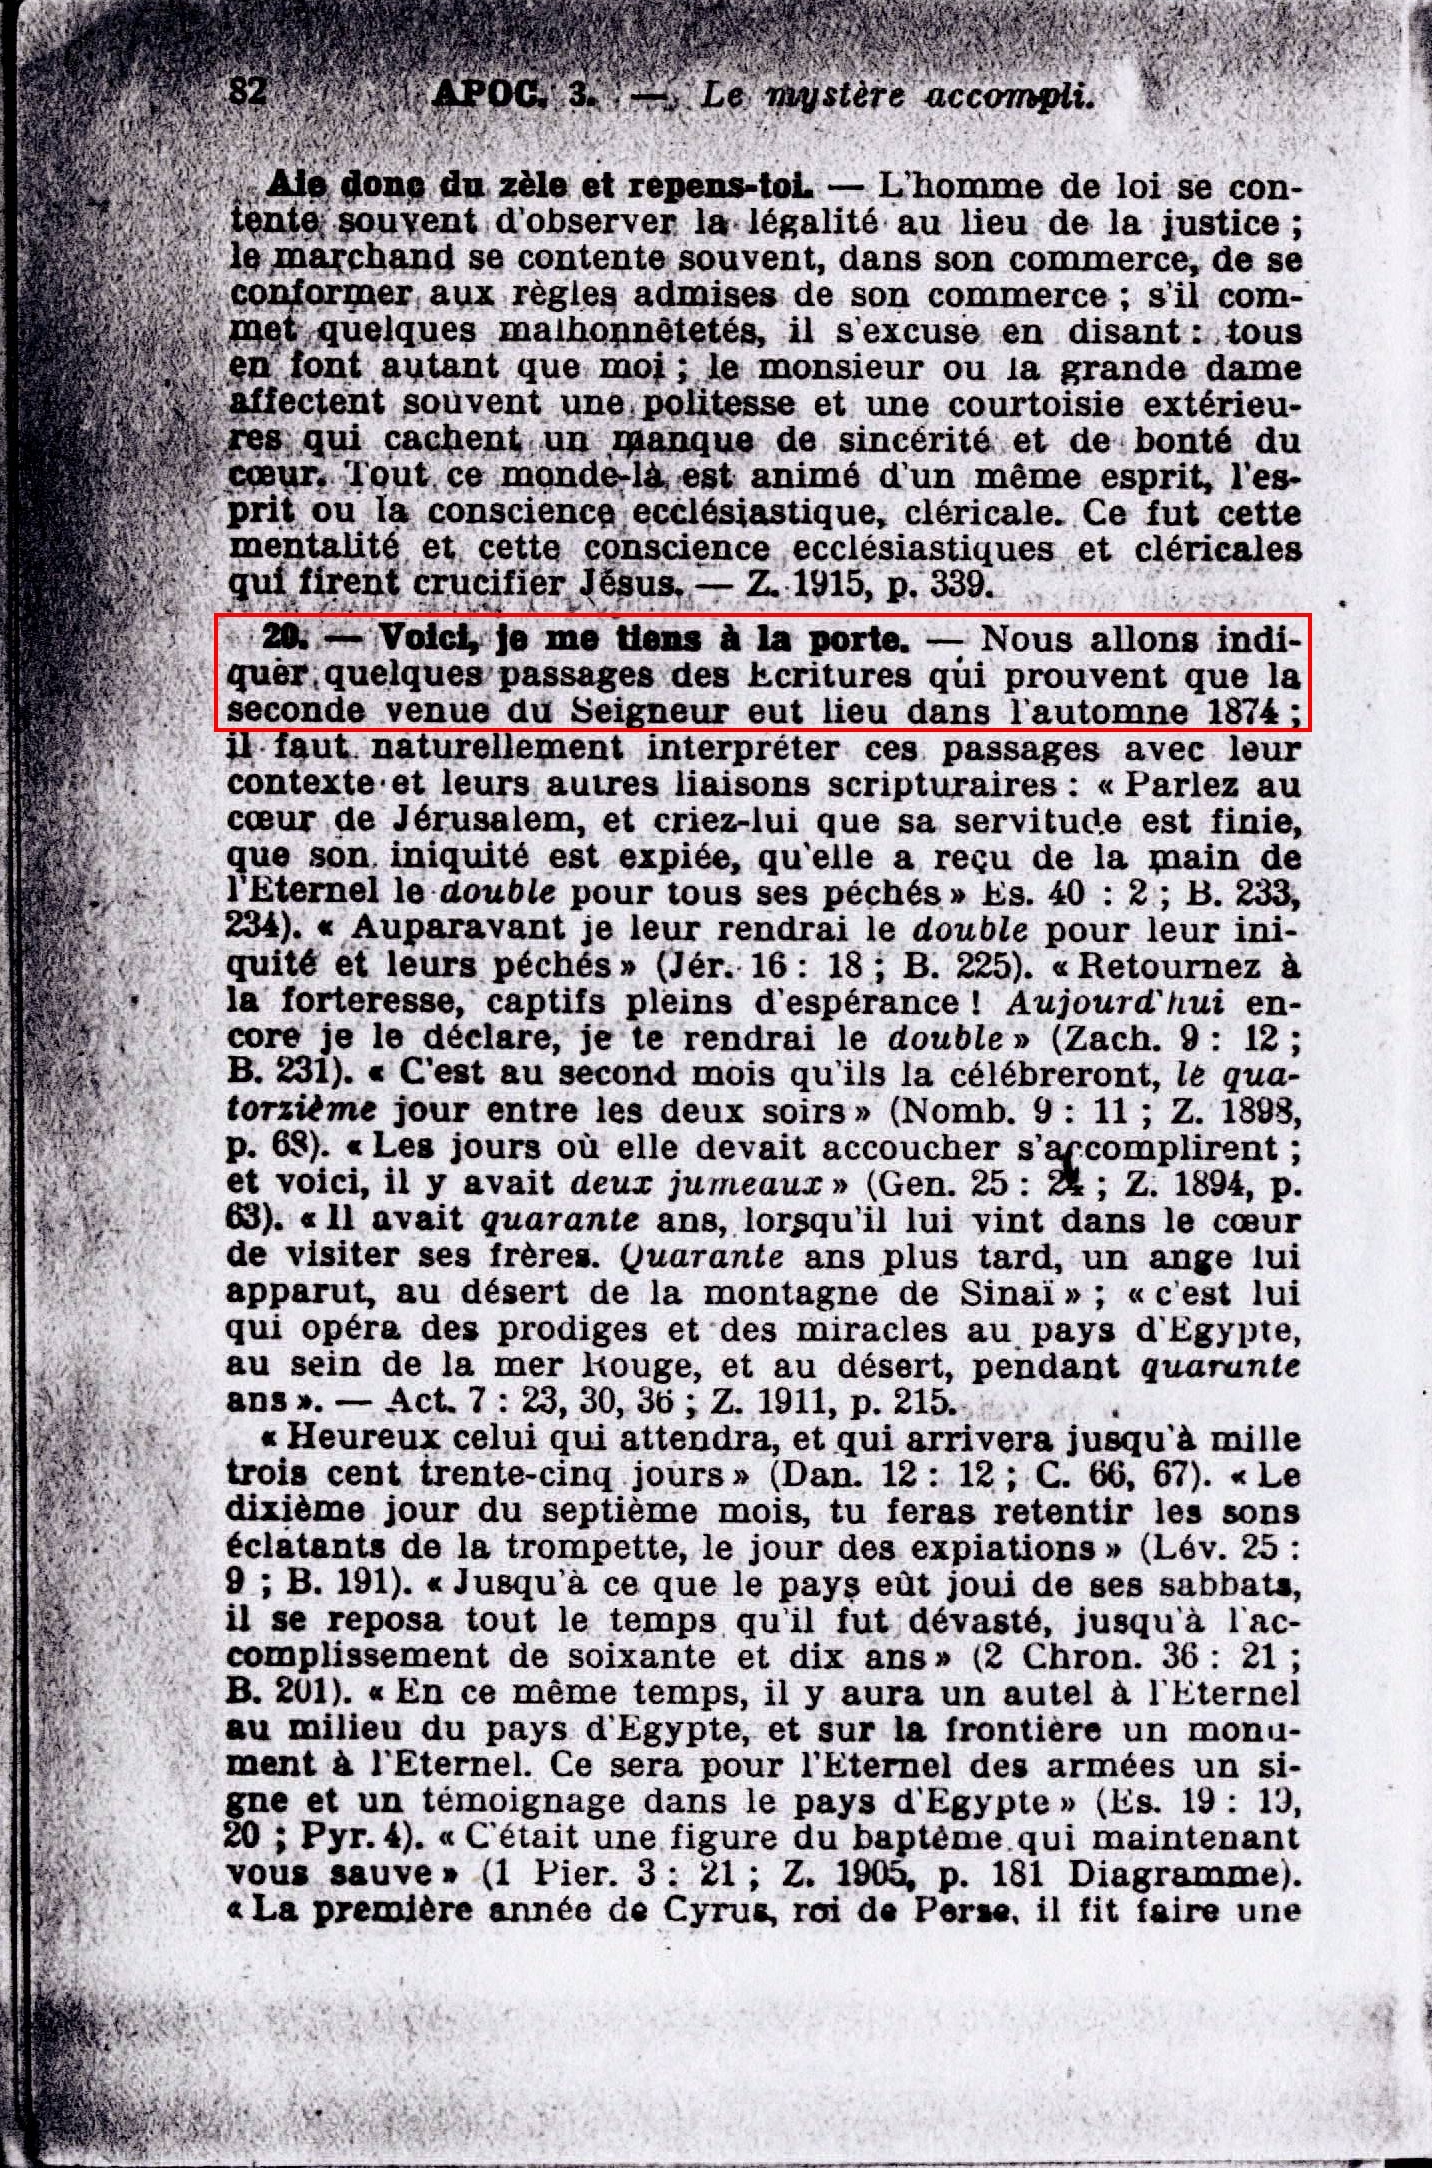 Les (prophètes) de la société watch tower et 1874 - Page 5 Coc3